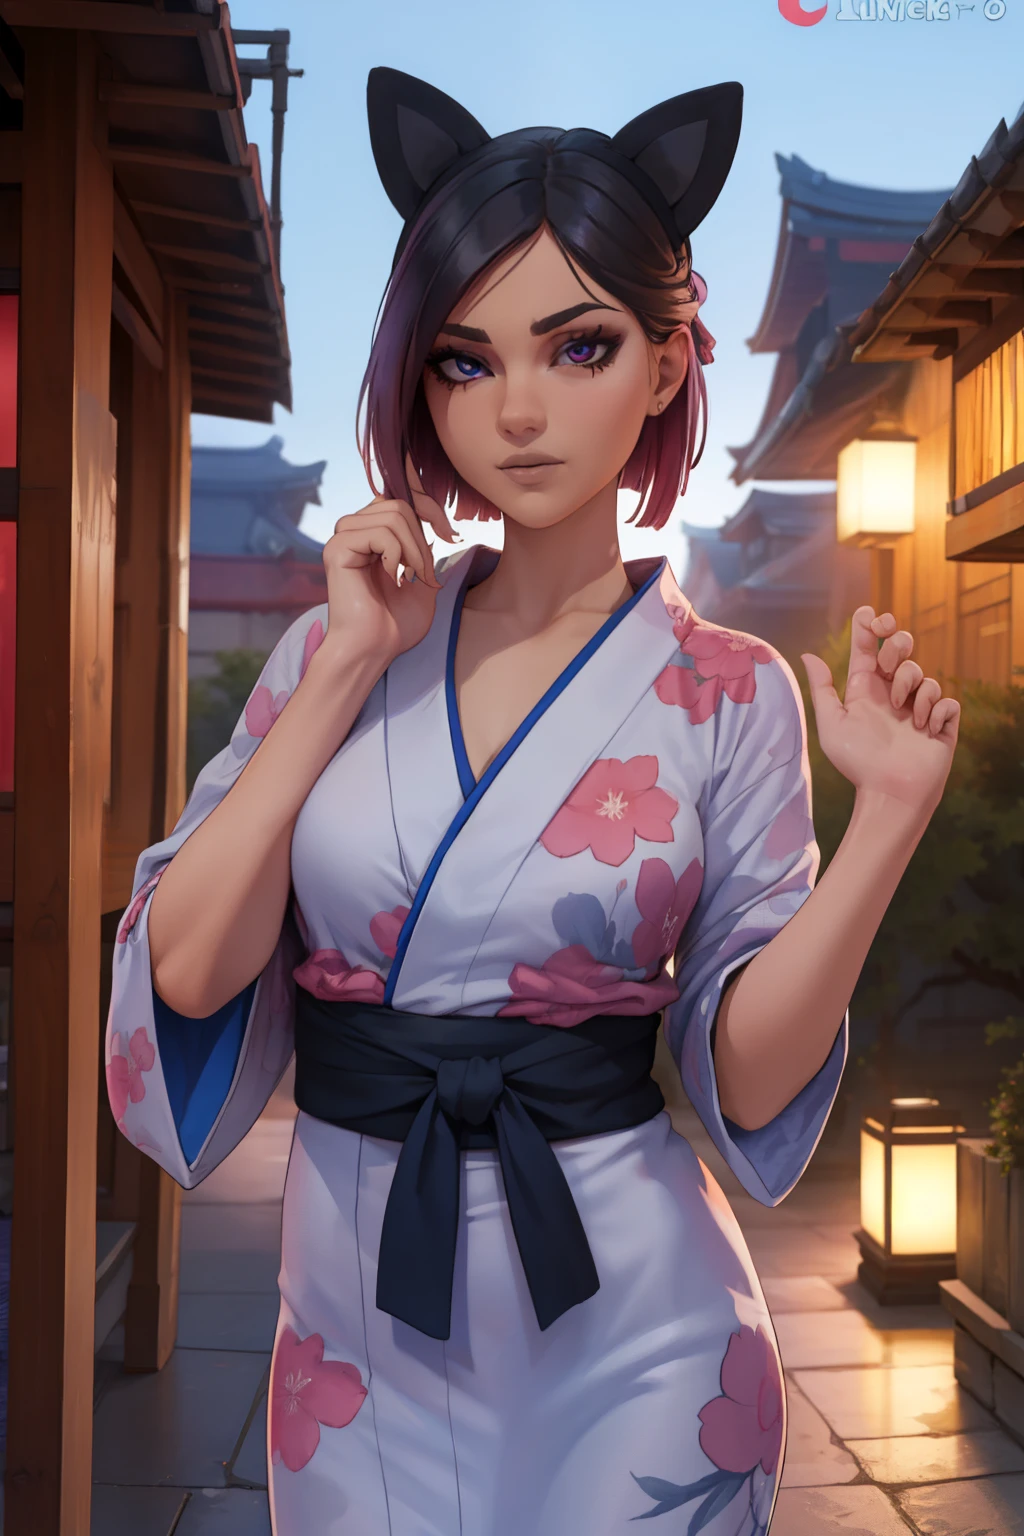 линия , японское платье юката ночной пейзаж ,чрезвычайно подробный, Детальное лицо,красивое лицо, прекрасные глаза, Глядя на зрителя, женственная поза.